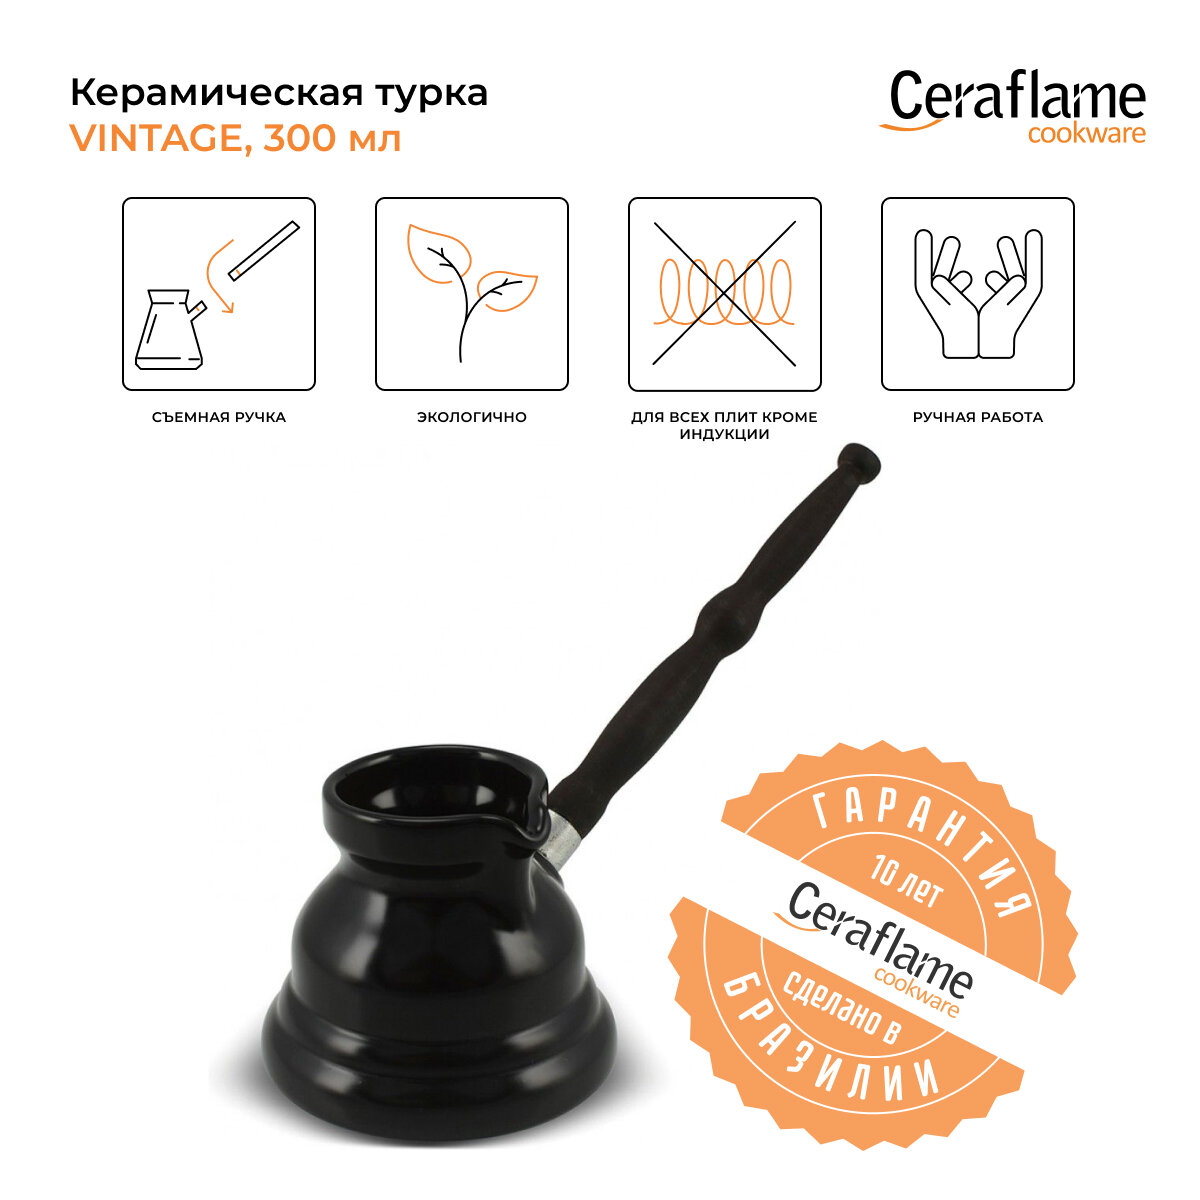 Турка керамическая для кофе Ceraflame Vintage, 300 мл, цвет черный